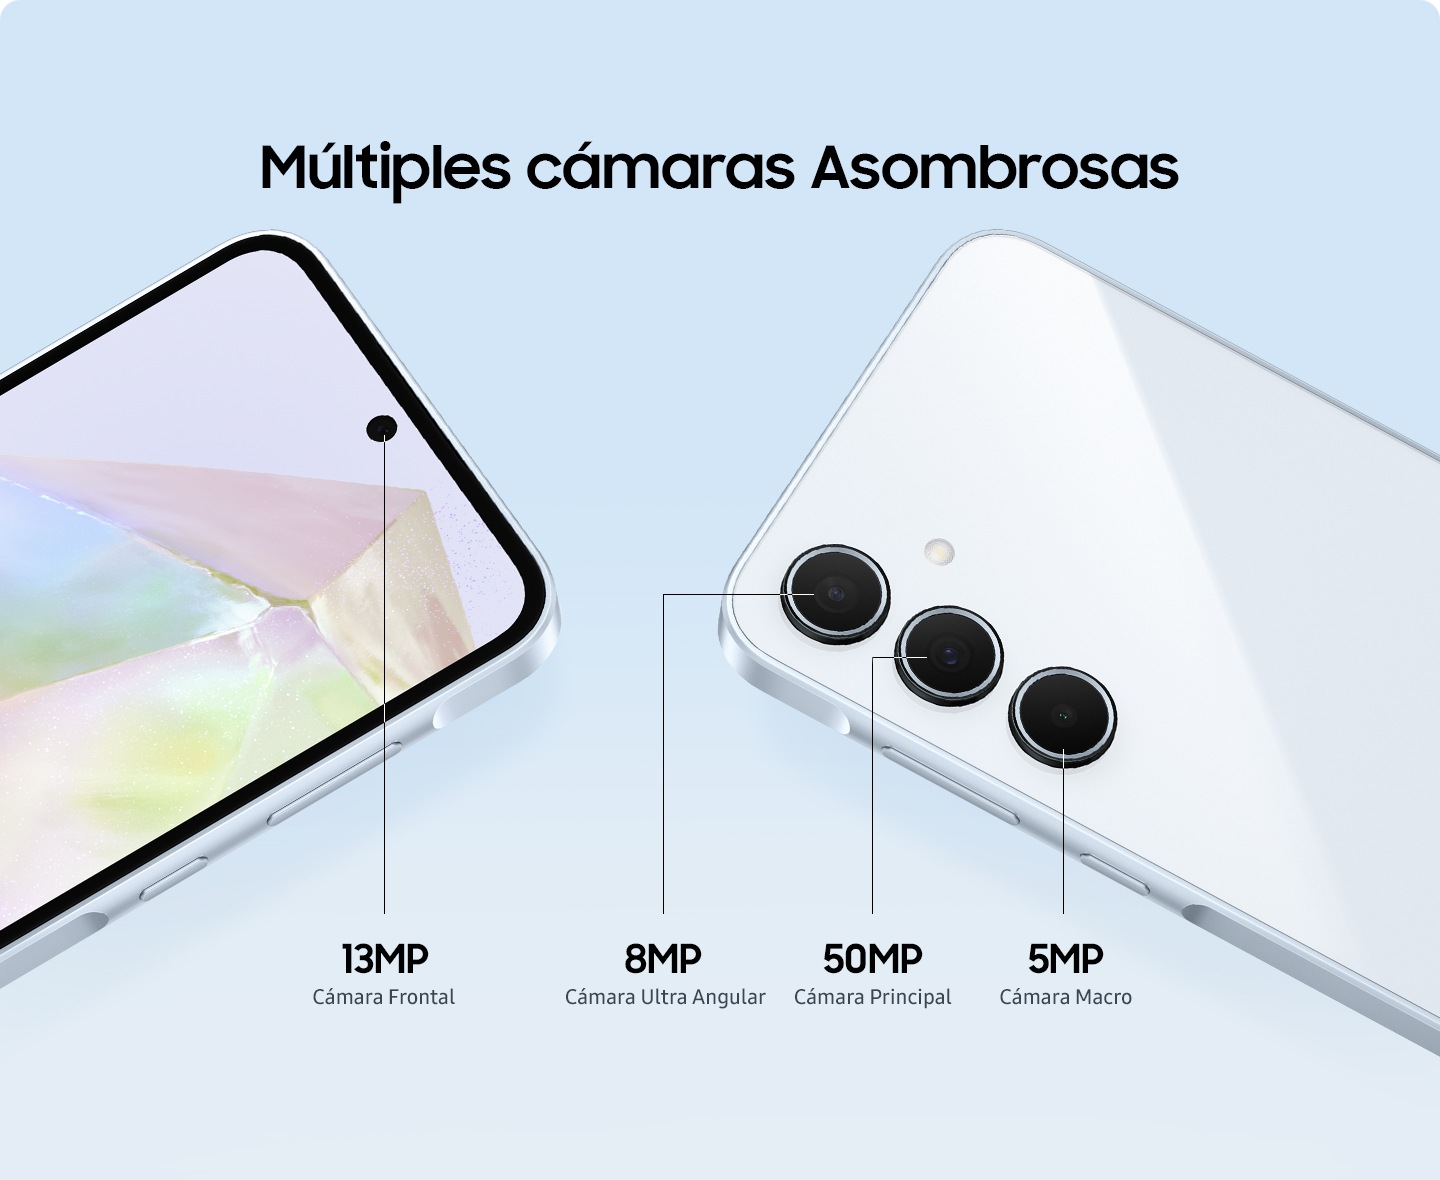 Primer plano de la sección superior de dos teléfonos inteligentes que muestran la cámara frontal de selfie de 13 MP, una cámara ultraancha de 8 MP, una cámara de ángulo amplio de 50 MP y una cámara macro de 5 MP.